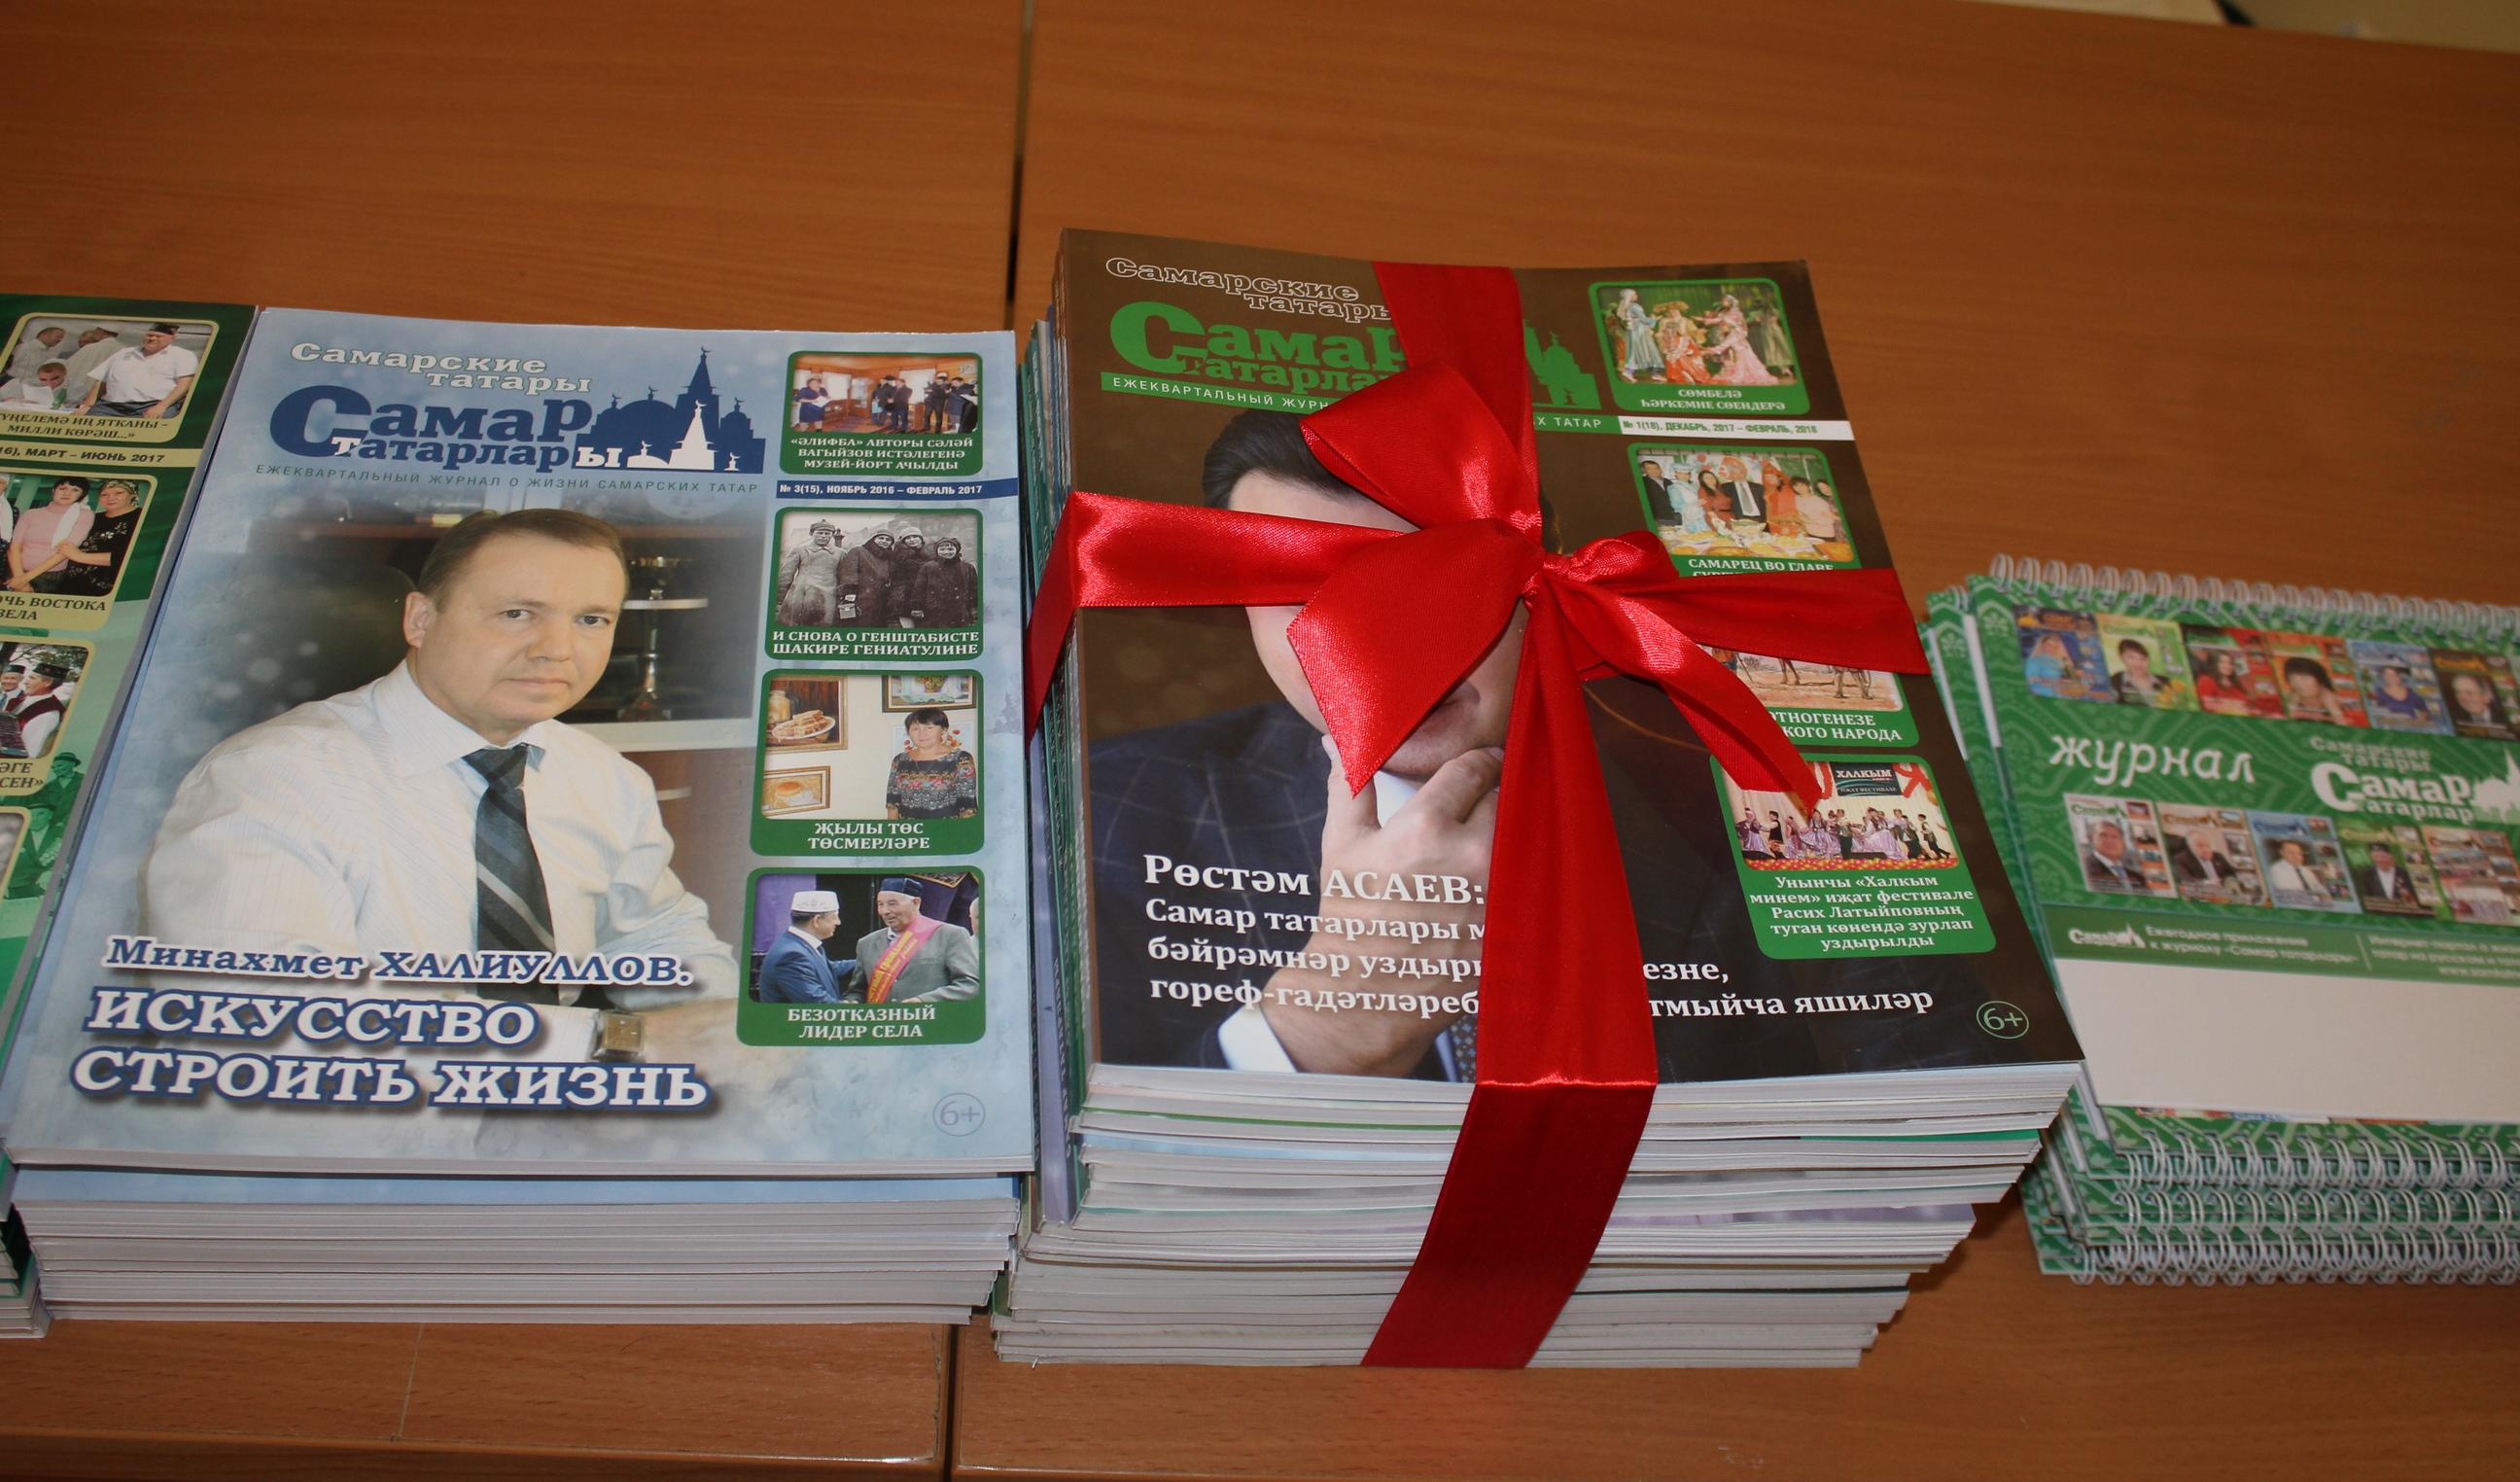 В Самаре отметили 5-летие журнала «Самарские татары» («Самар татарлары»)